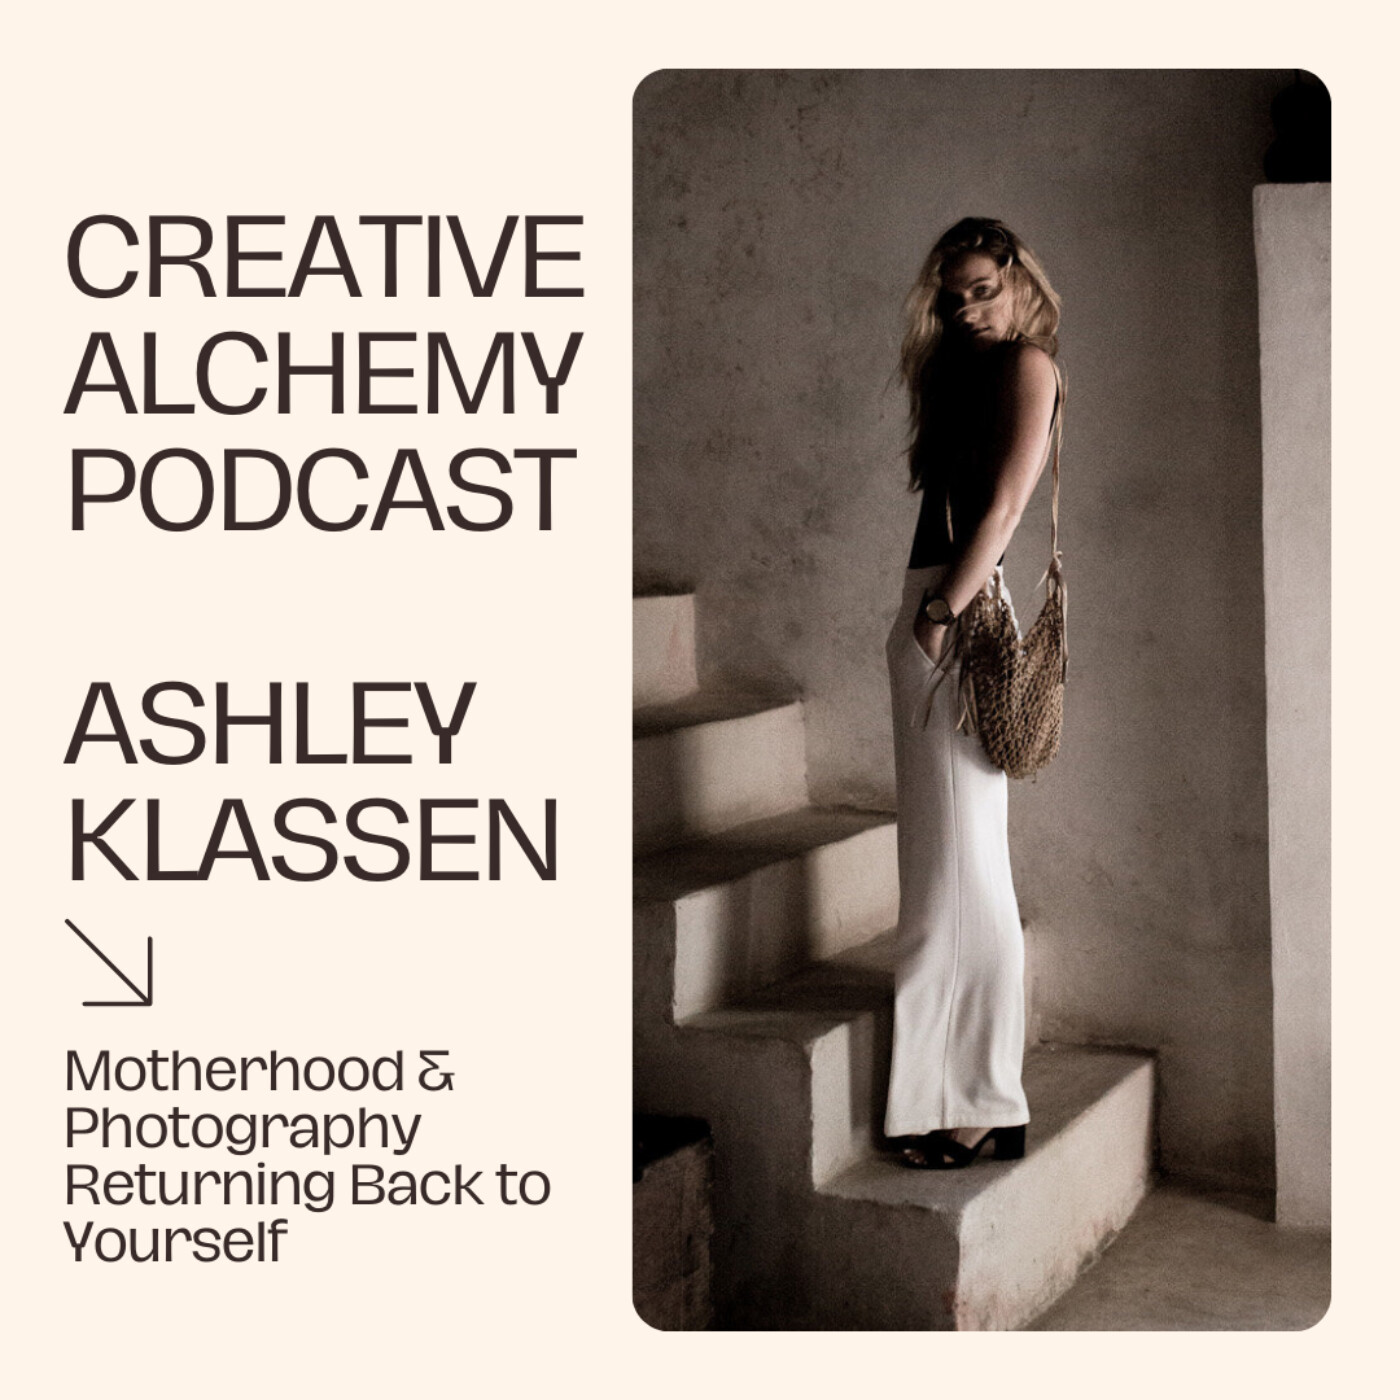 Motherhood & Photography - Returning Back to Yourself with Ashley Klassen Image